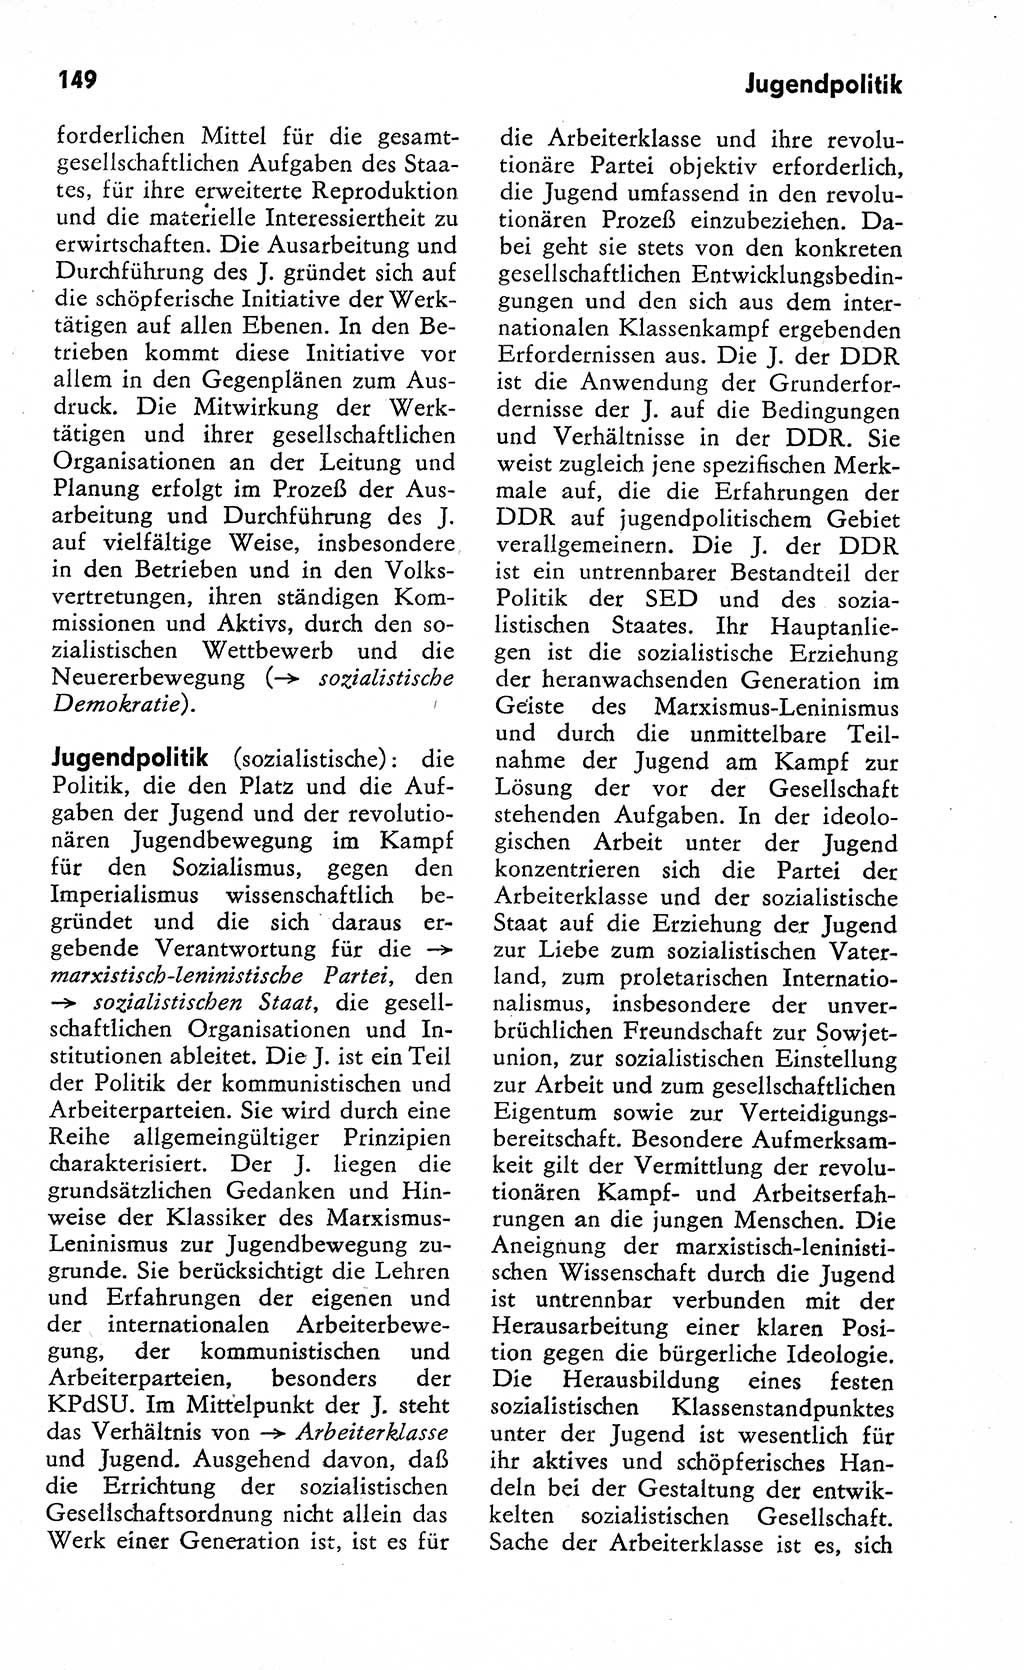 Wörterbuch zum sozialistischen Staat [Deutsche Demokratische Republik (DDR)] 1974, Seite 149 (Wb. soz. St. DDR 1974, S. 149)